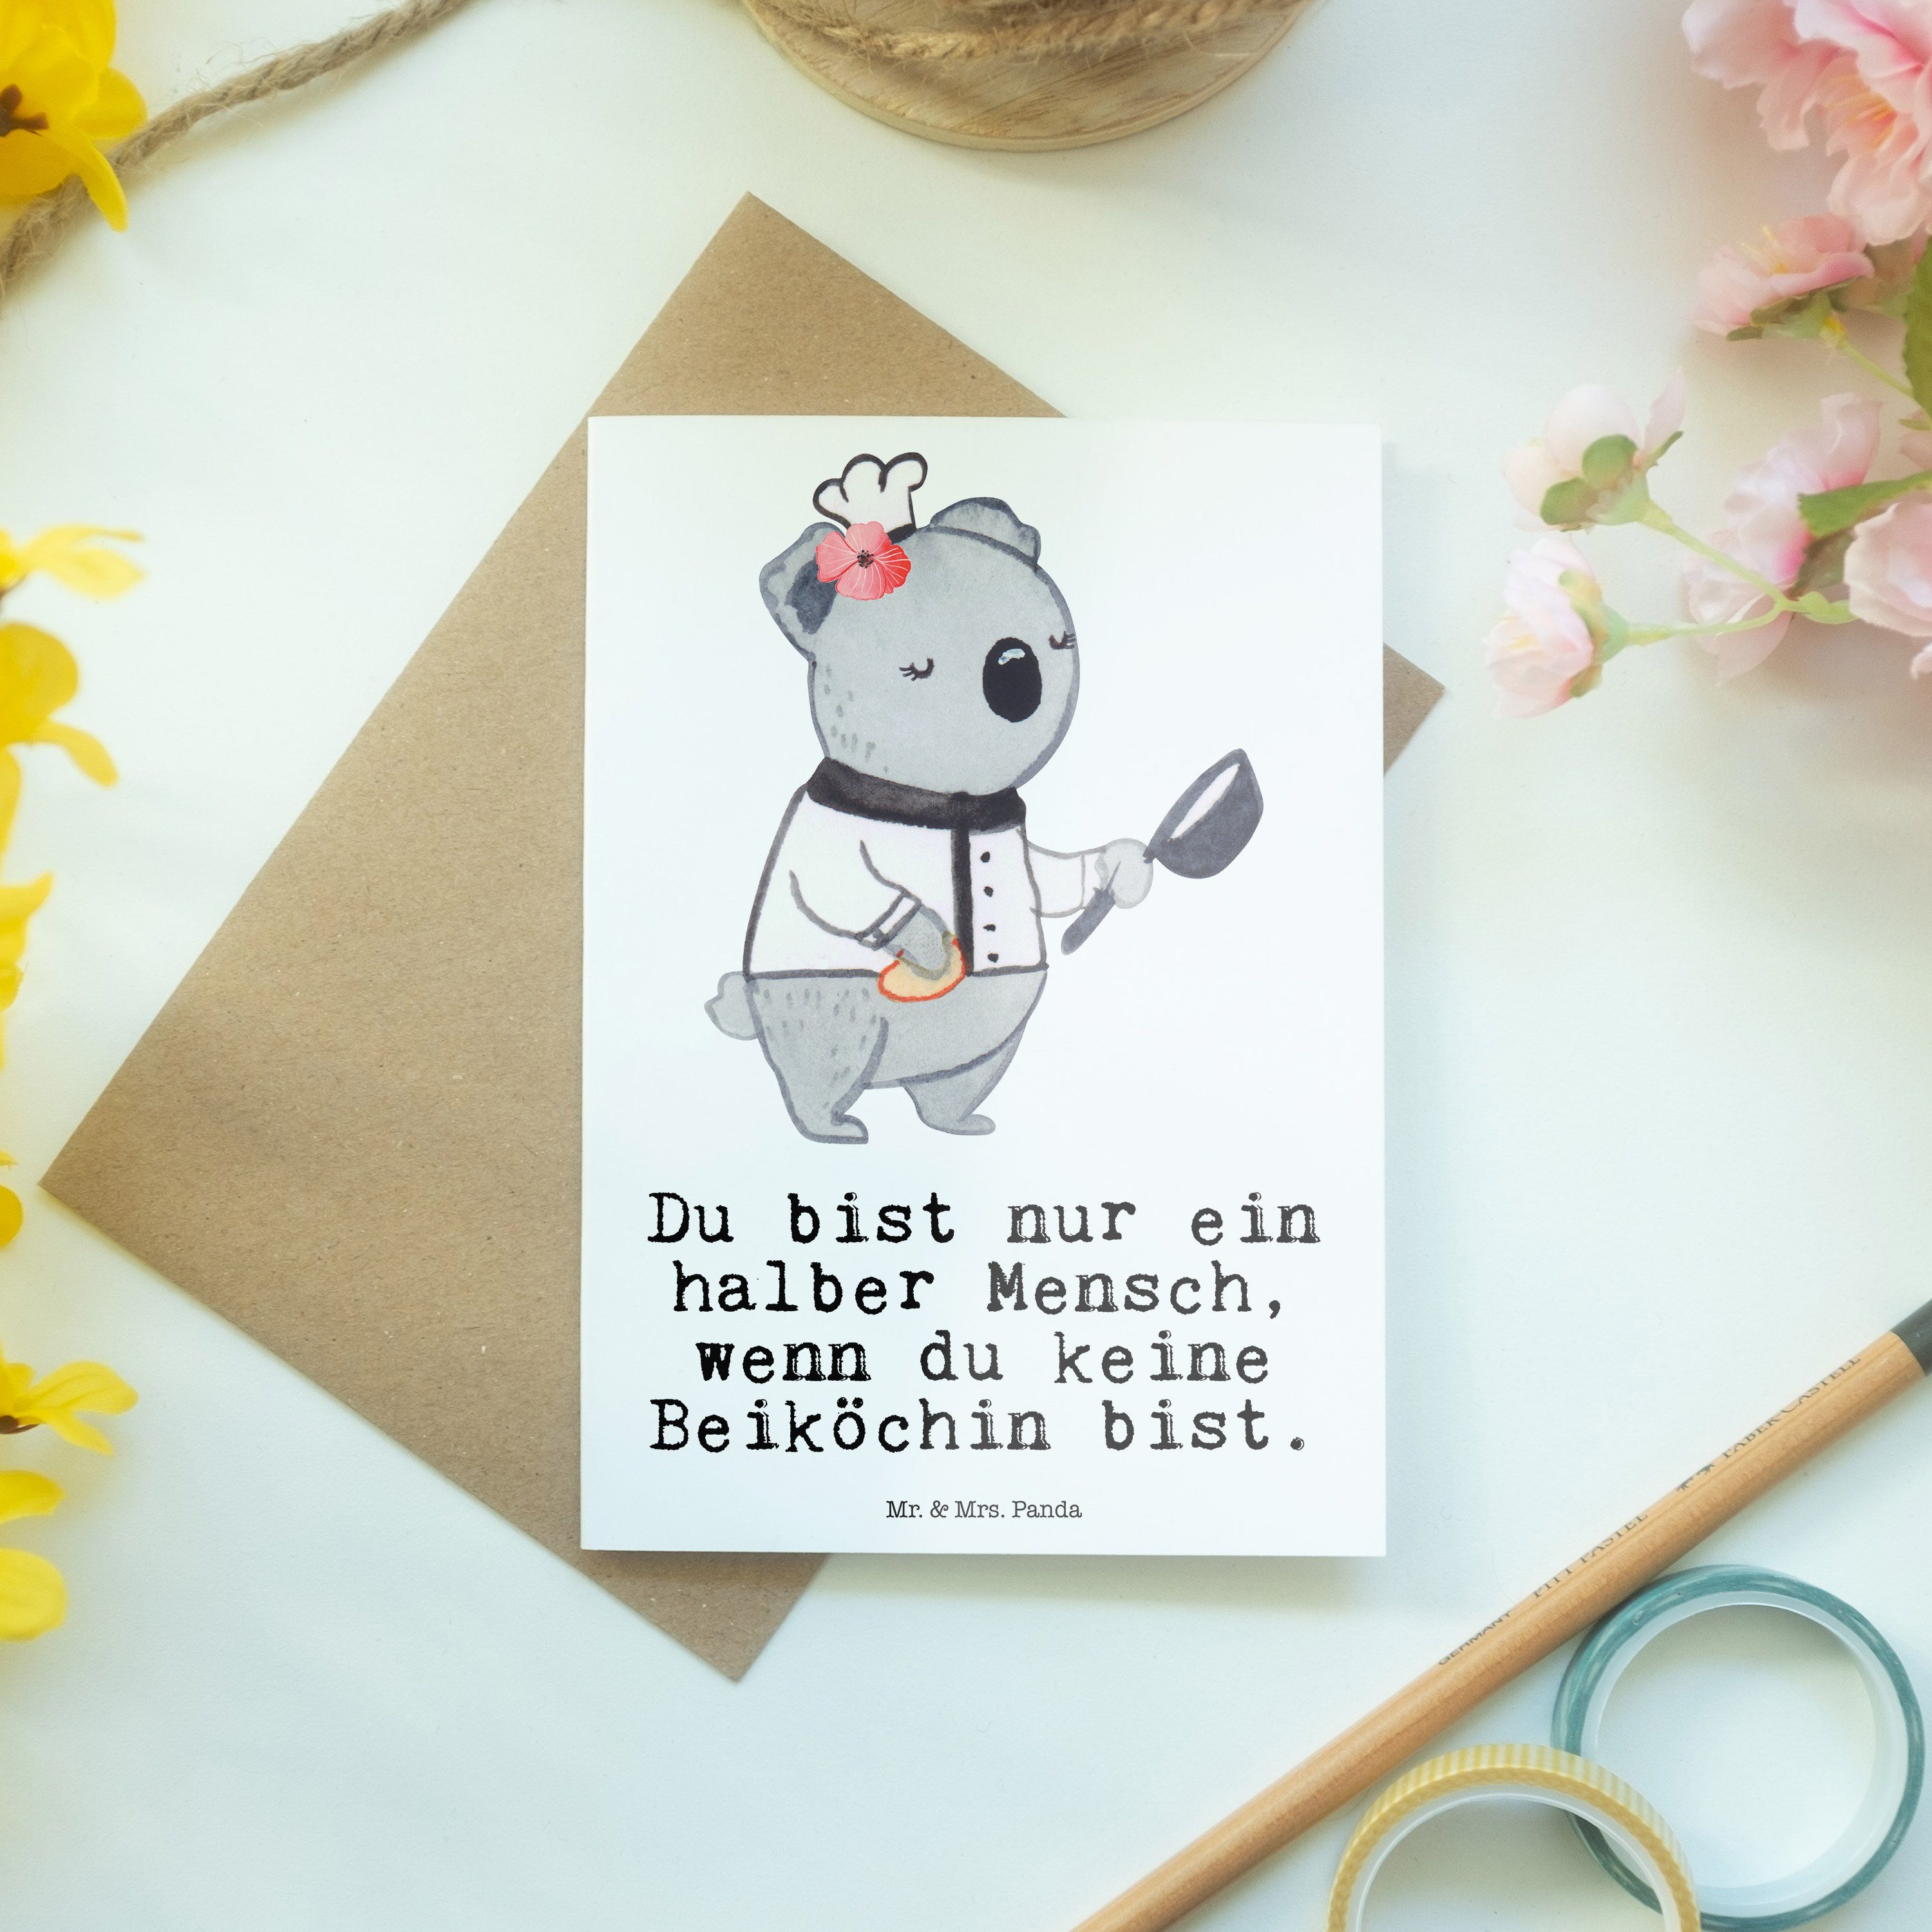 Beiköchin - Herz - Mr. mit Weiß Frühs Jungkoch, Mrs. & Panda Hochzeitskarte, Geschenk, Grußkarte